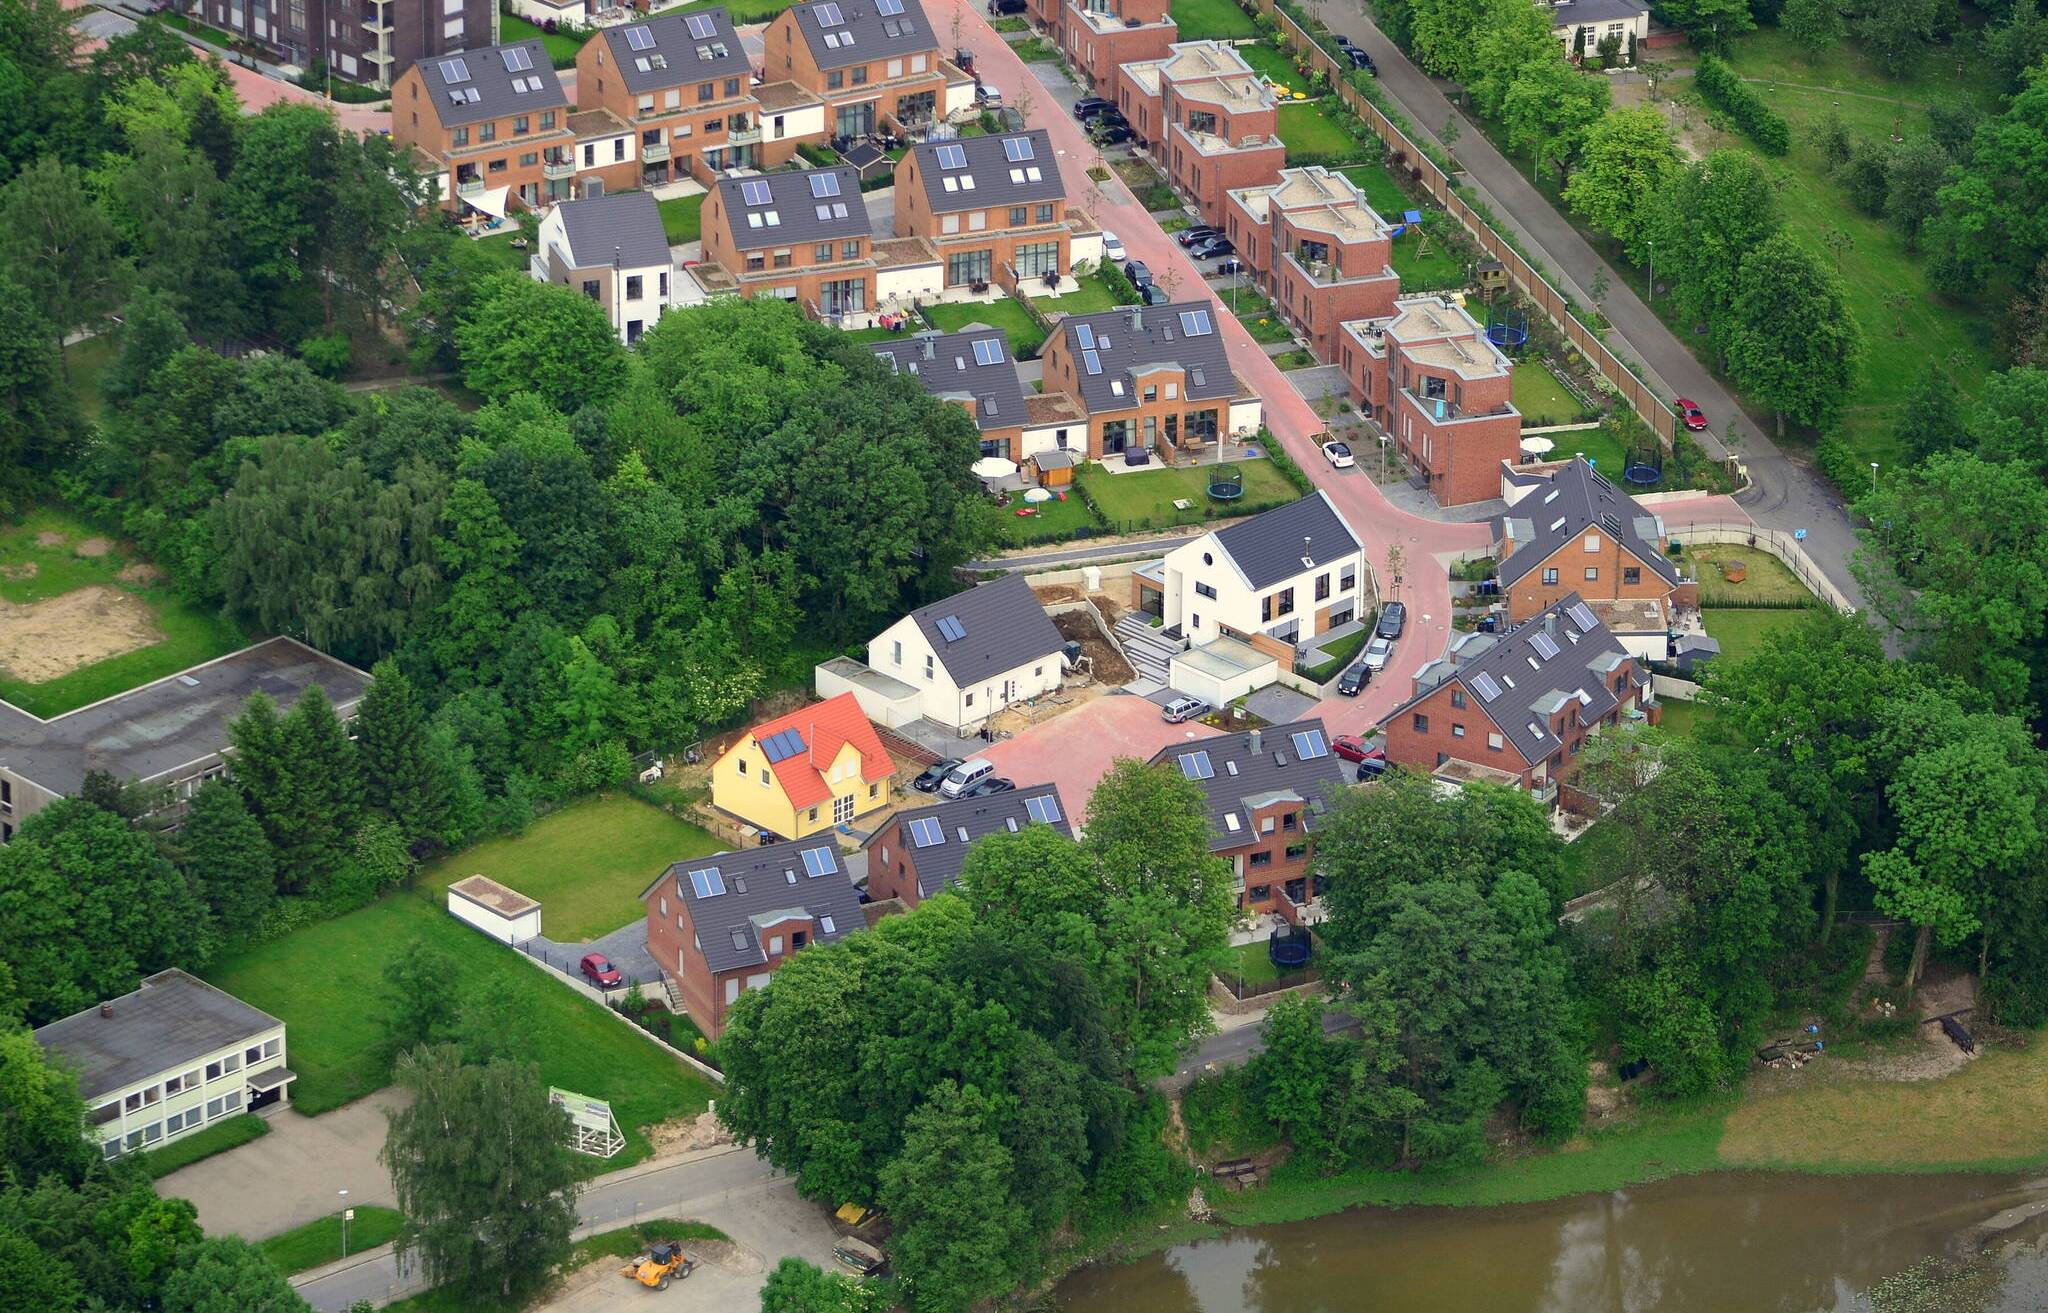 Siedlung am Stadtwald in Mettmann: Viel